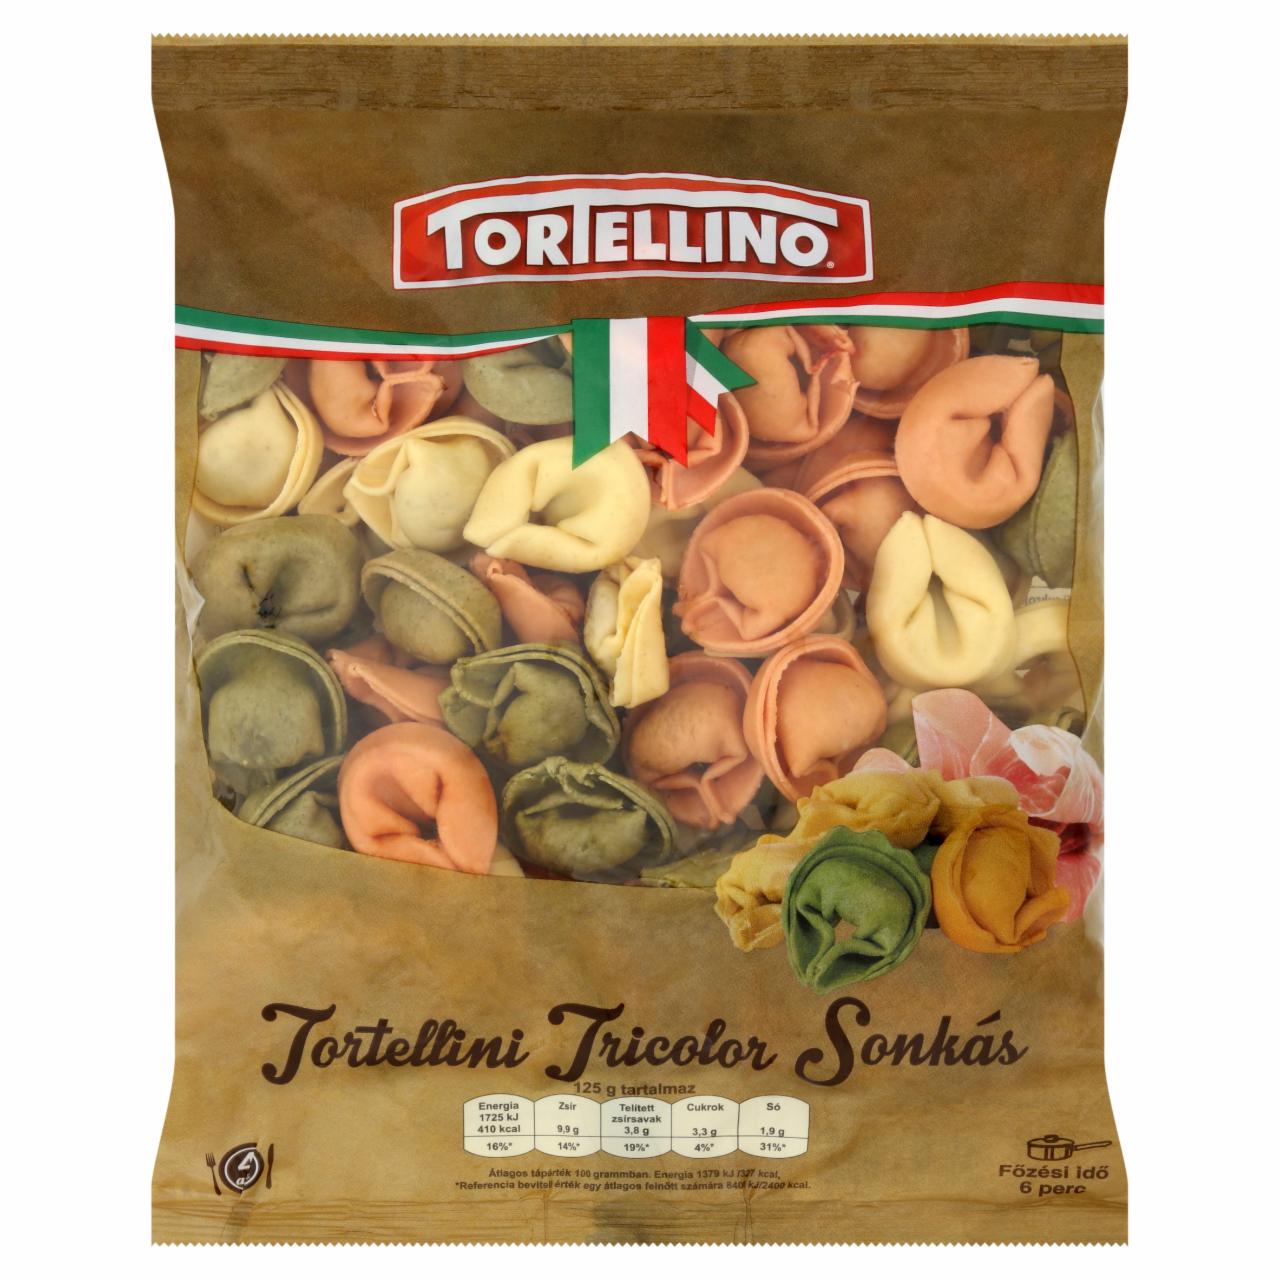 Képek - Tortellino Tortellini Tricolor sonkás friss tészta 500 g